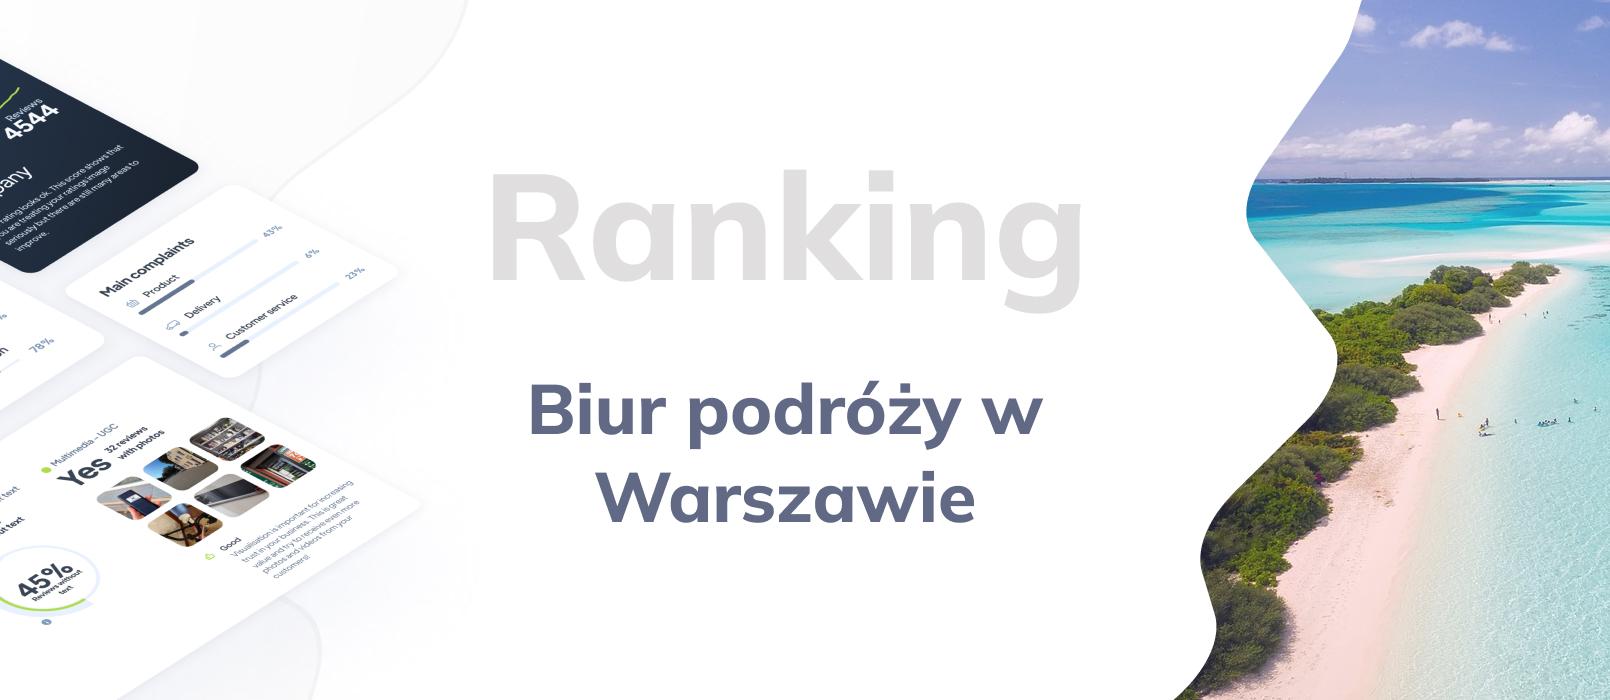 Biura podróży w Warszawie - ranking TOP 10